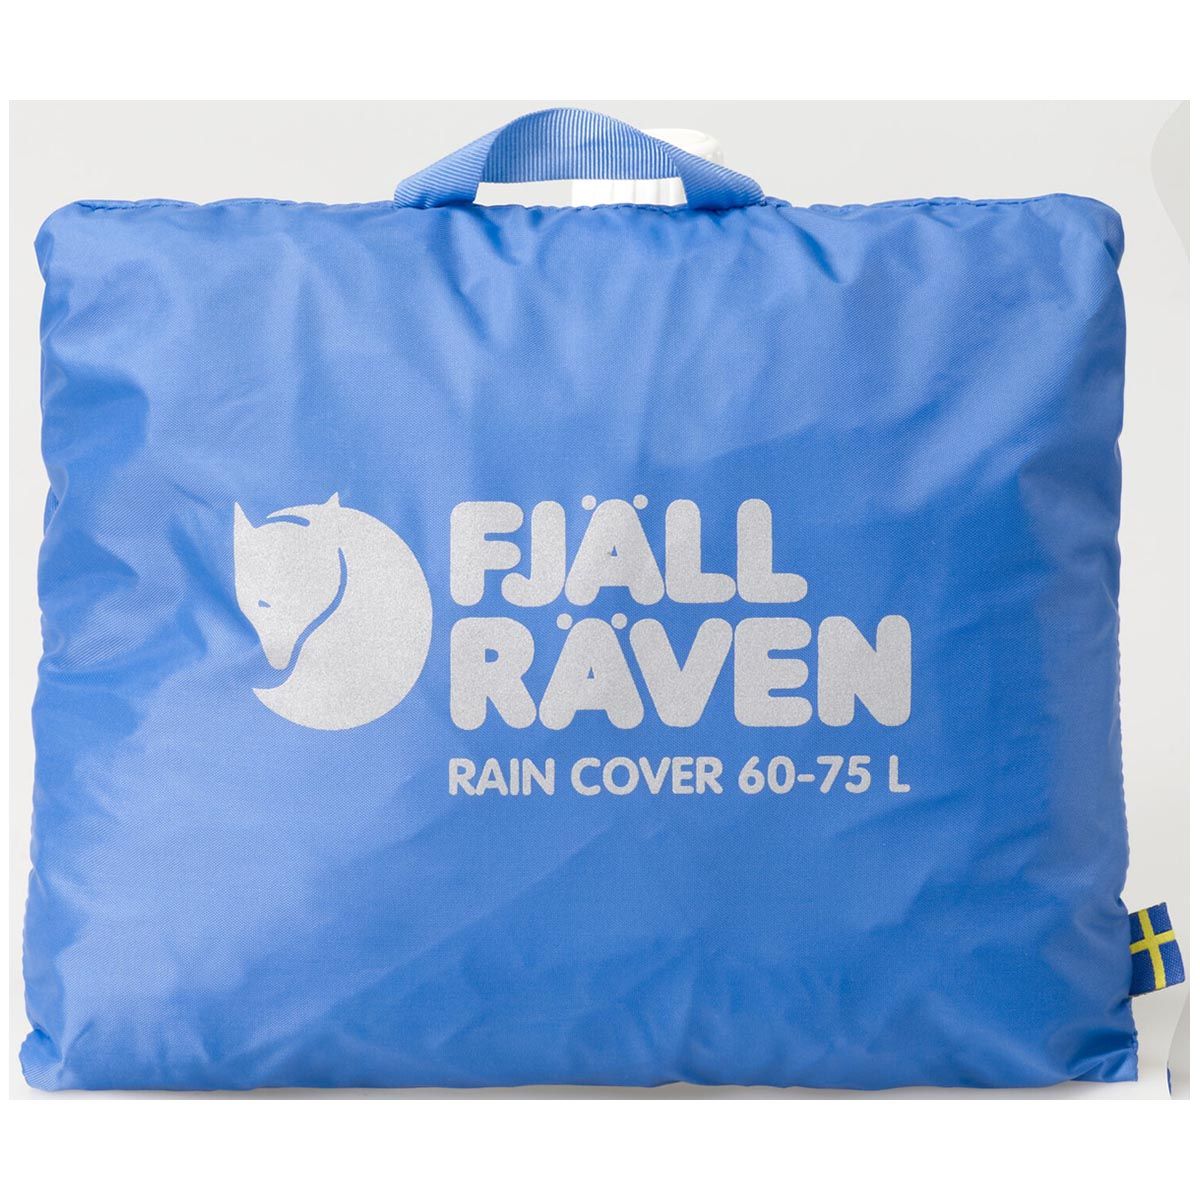 Rain Cover 60-75